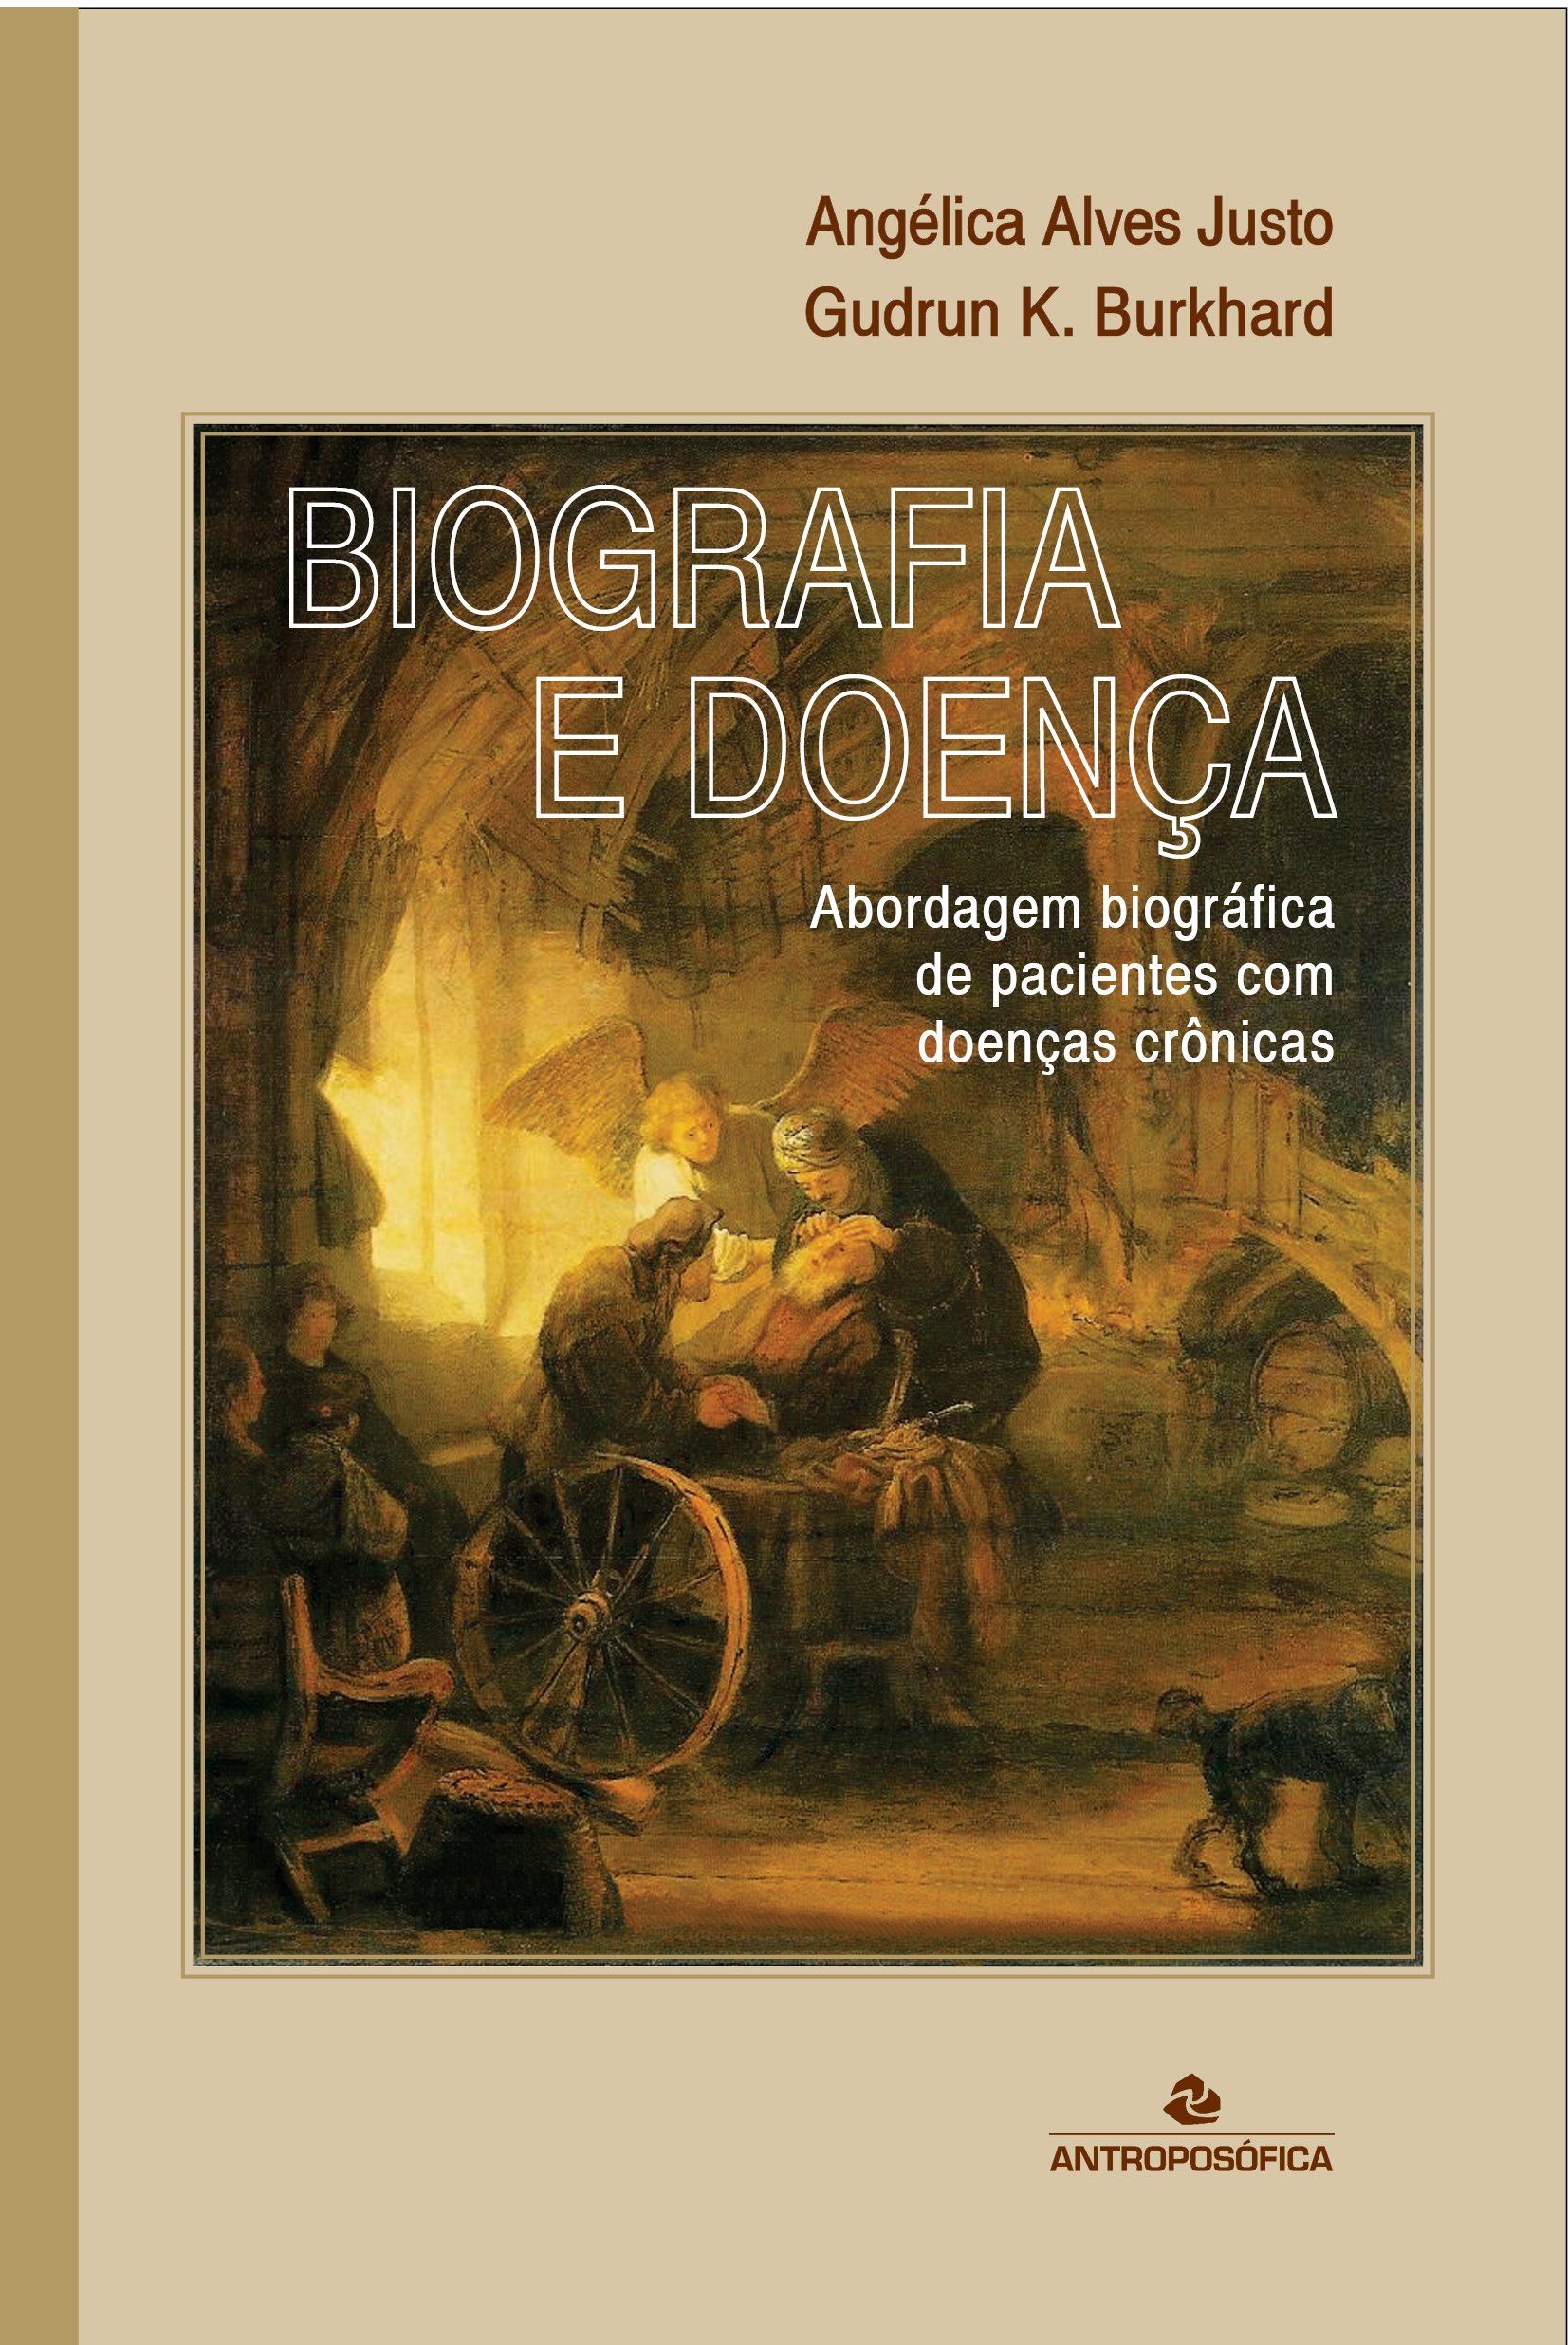 BIOGRAFIA E DOENÇA - Angélica Alves Justo e Gudrun K. Burkhard